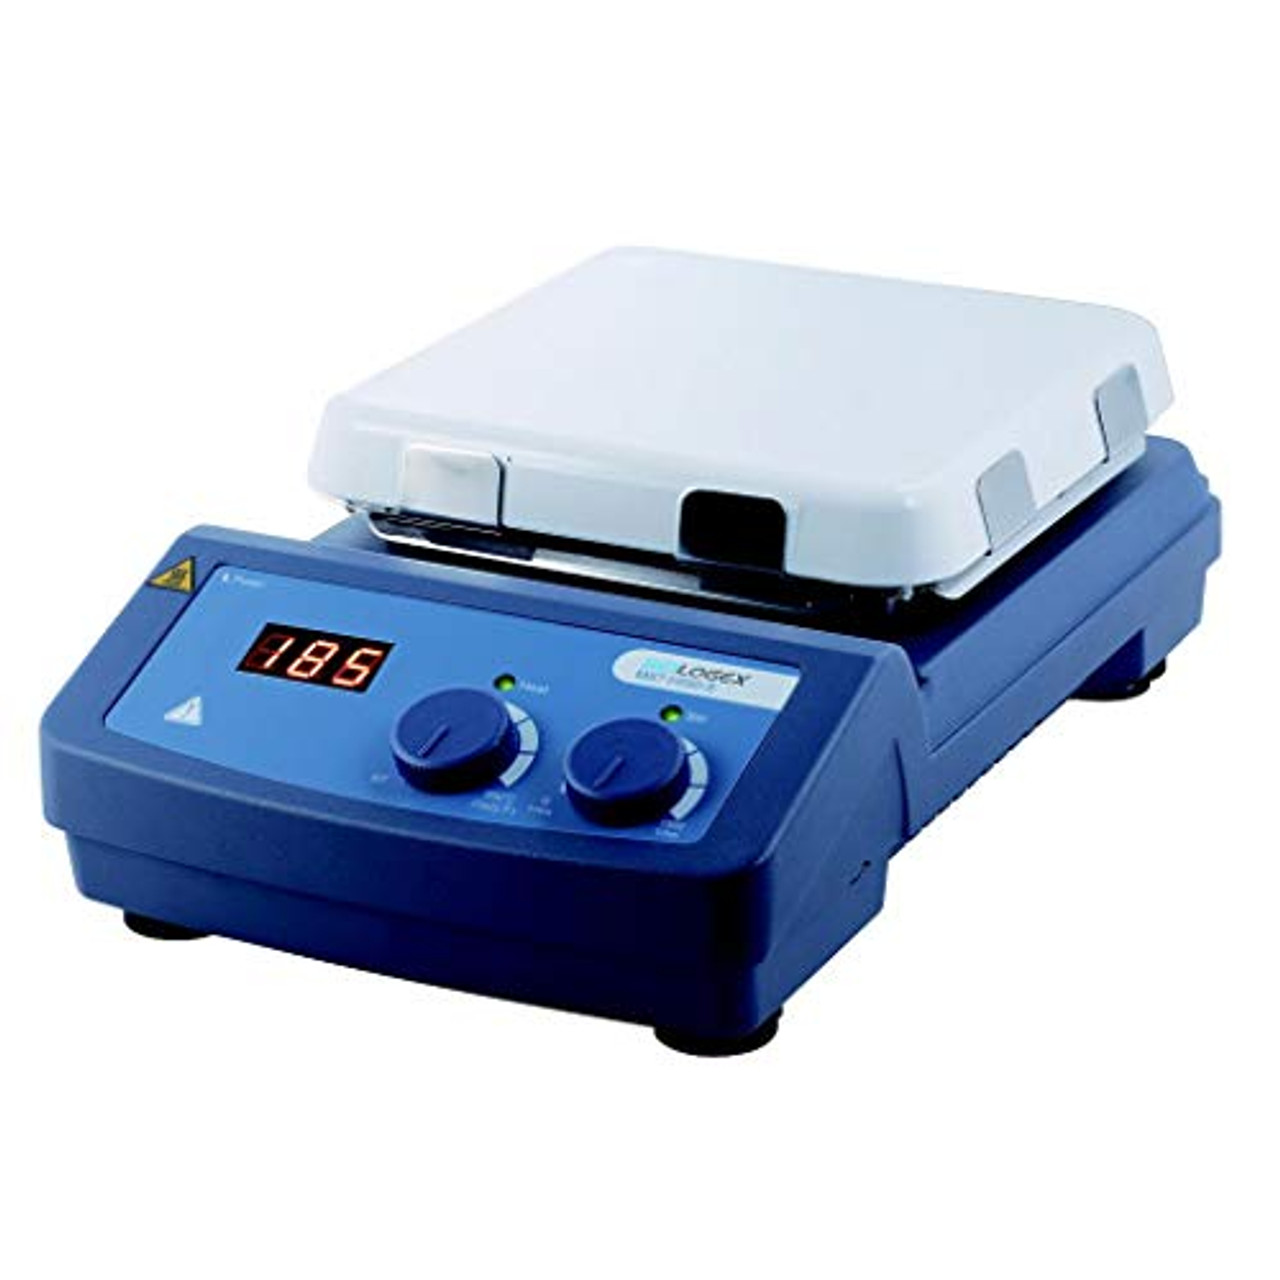 Hotplate Stirrer, Digital, 380C Maximum Temperature, 5.5 x 5.5